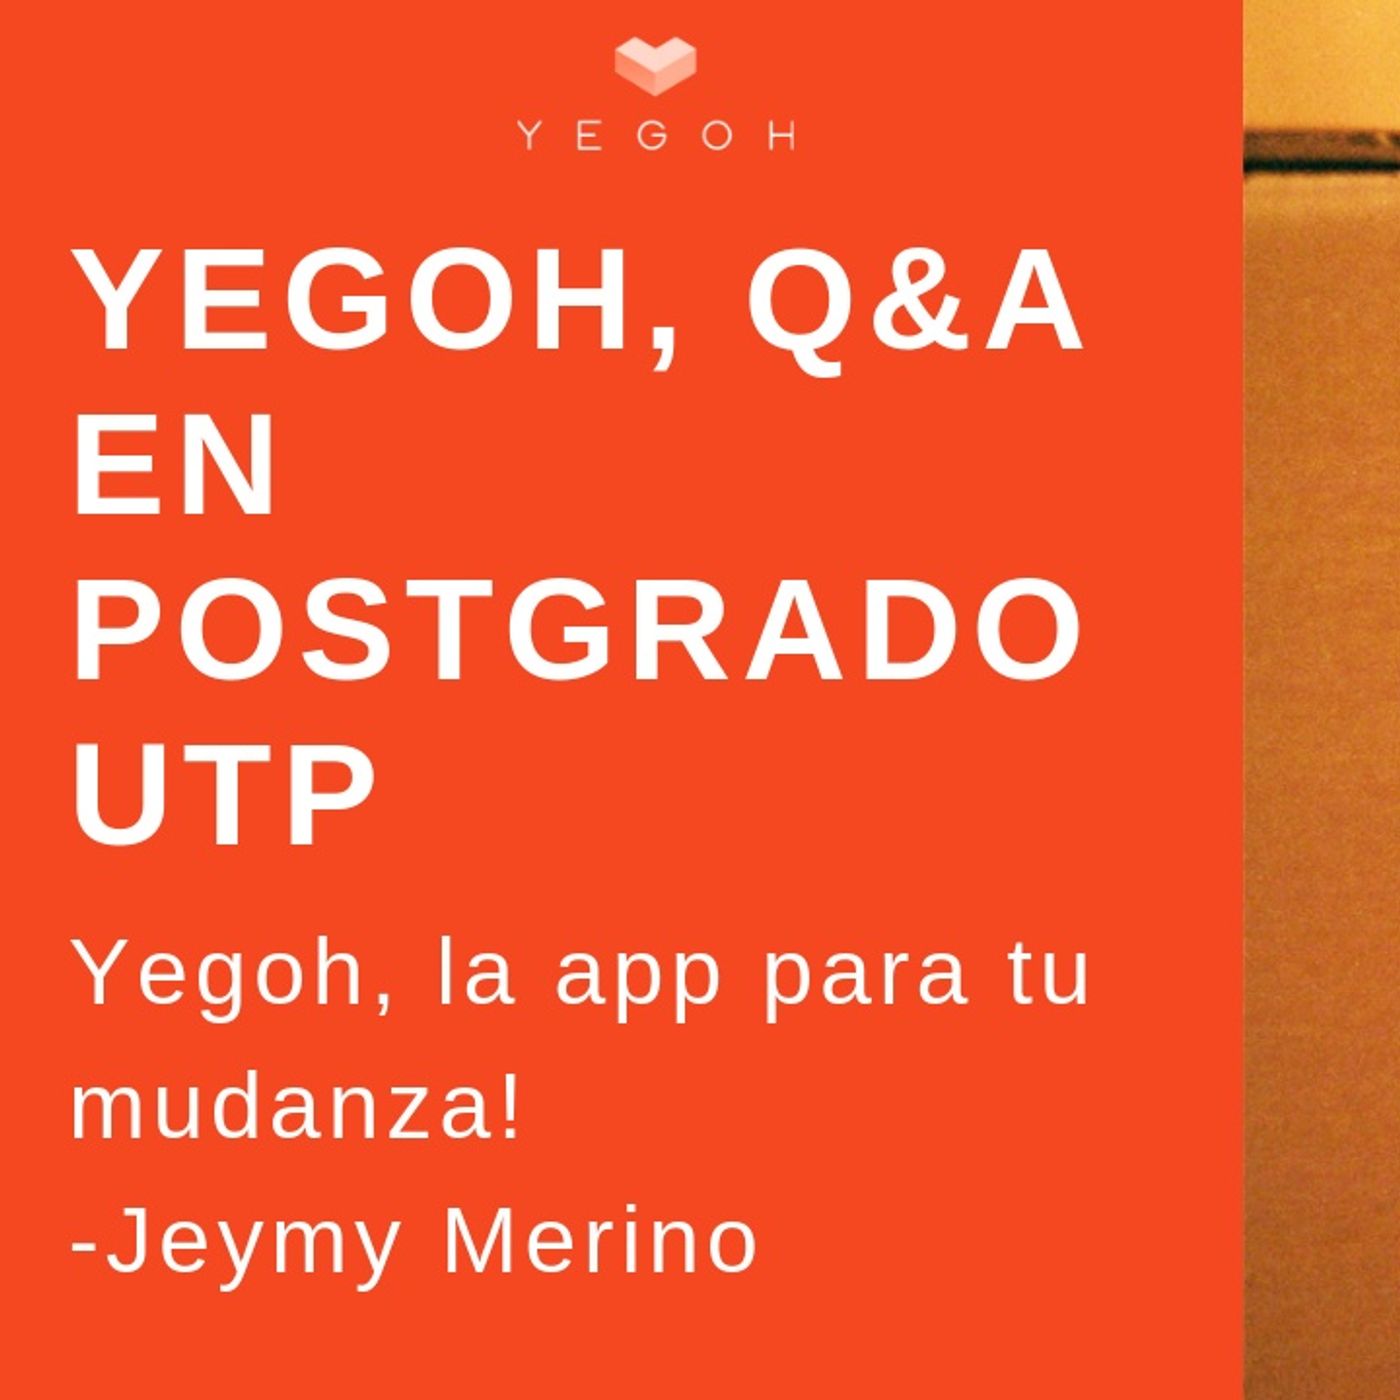 Jeymy Merino de Yegoh la app para tu mudanza en postgrado UTP (1)